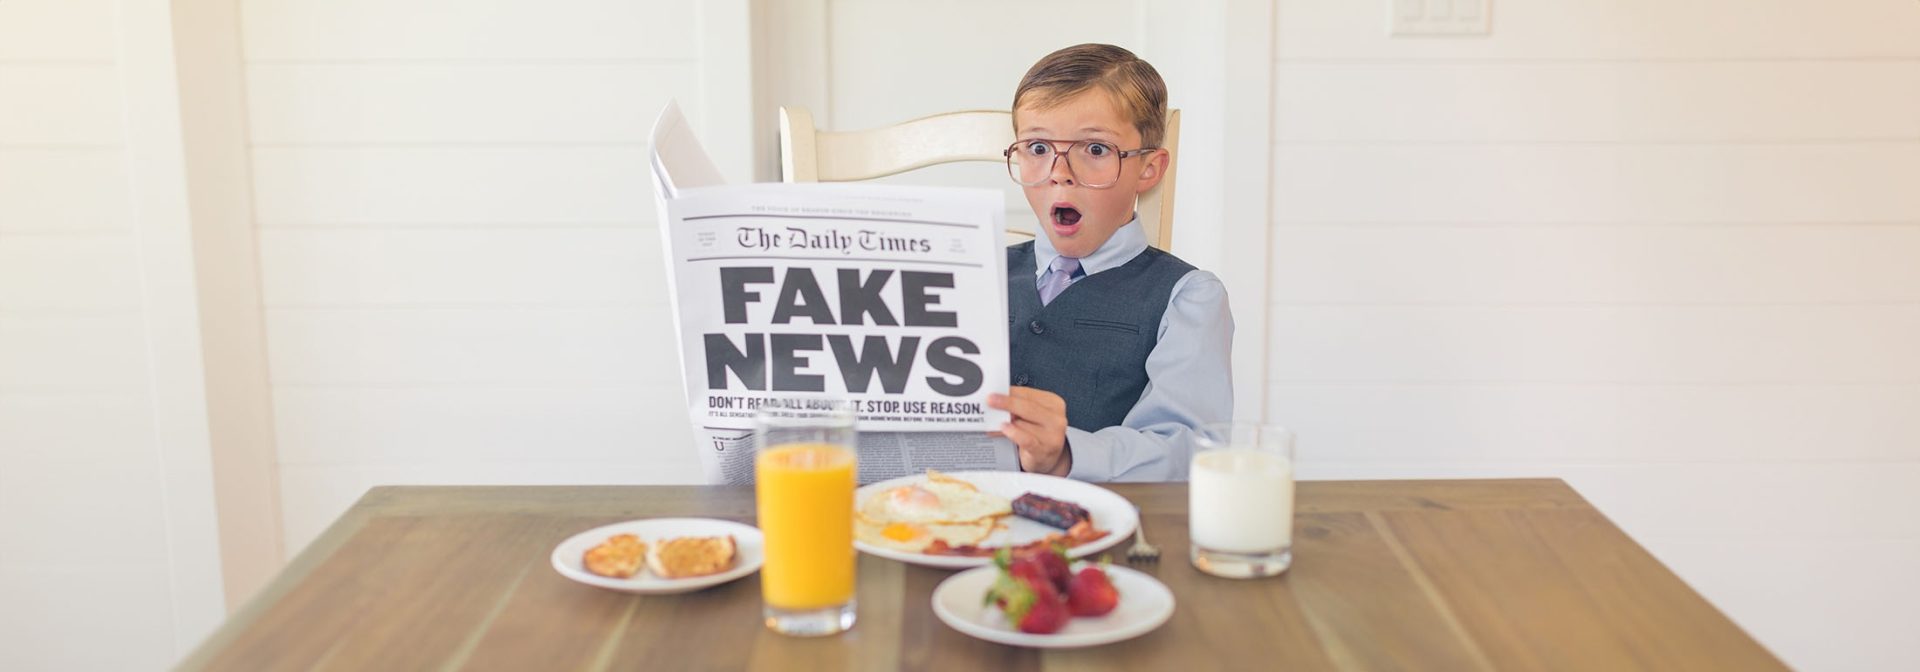 Junge mit Fake News Zeitung